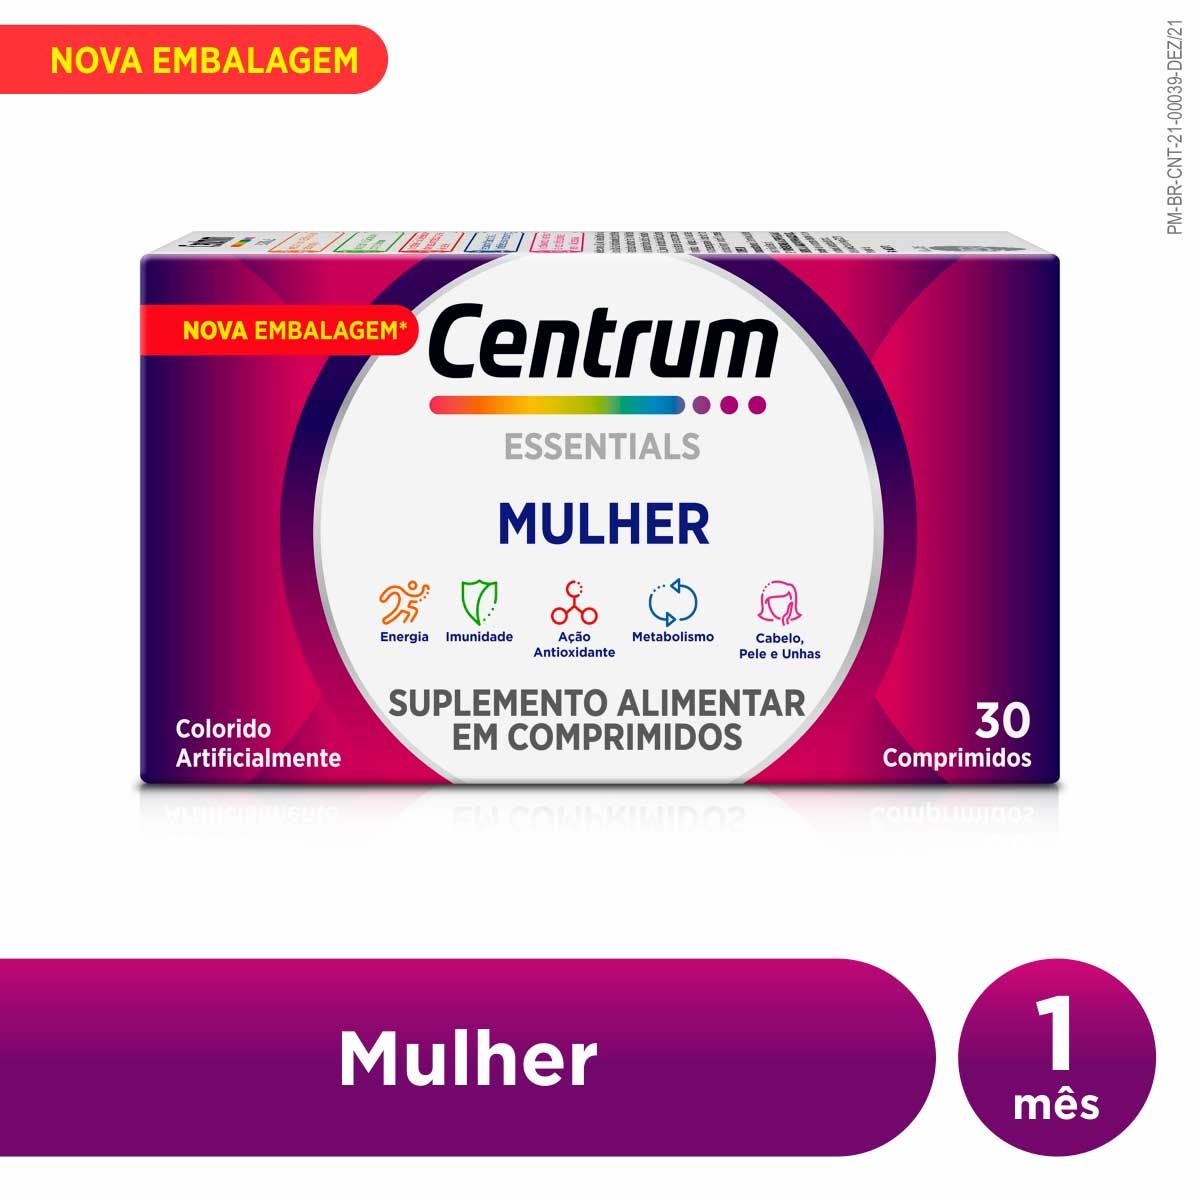 Polivitamínico Centrum Essentials Mulher de A a Zinco 30 comprimidos